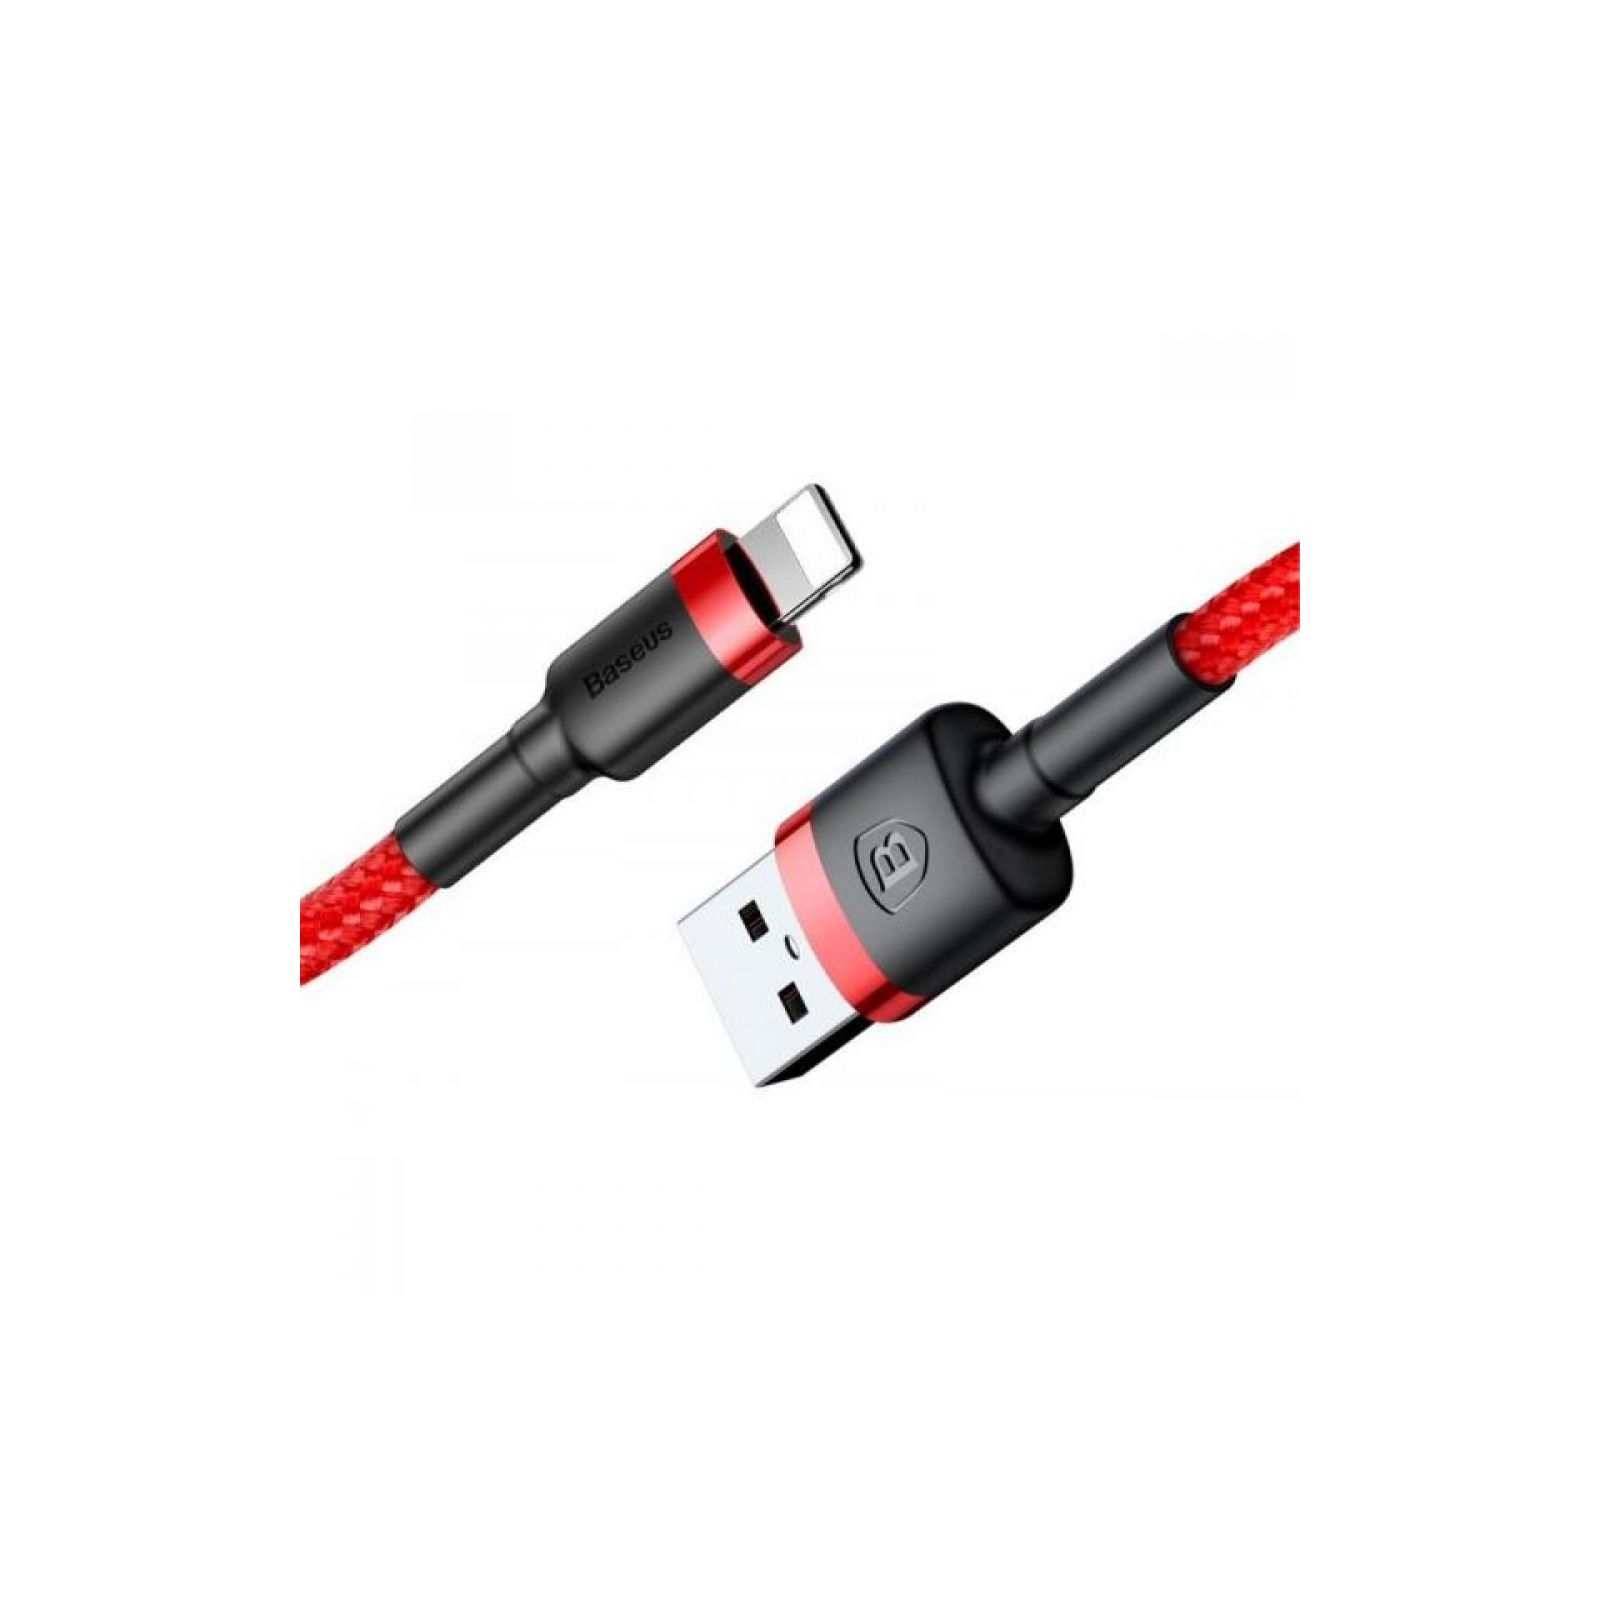 Дата кабель USB 2.0 AM to Lightning 2.0m Cafule 1.5A gray+black Baseus (CALKLF-CG1) изображение 3